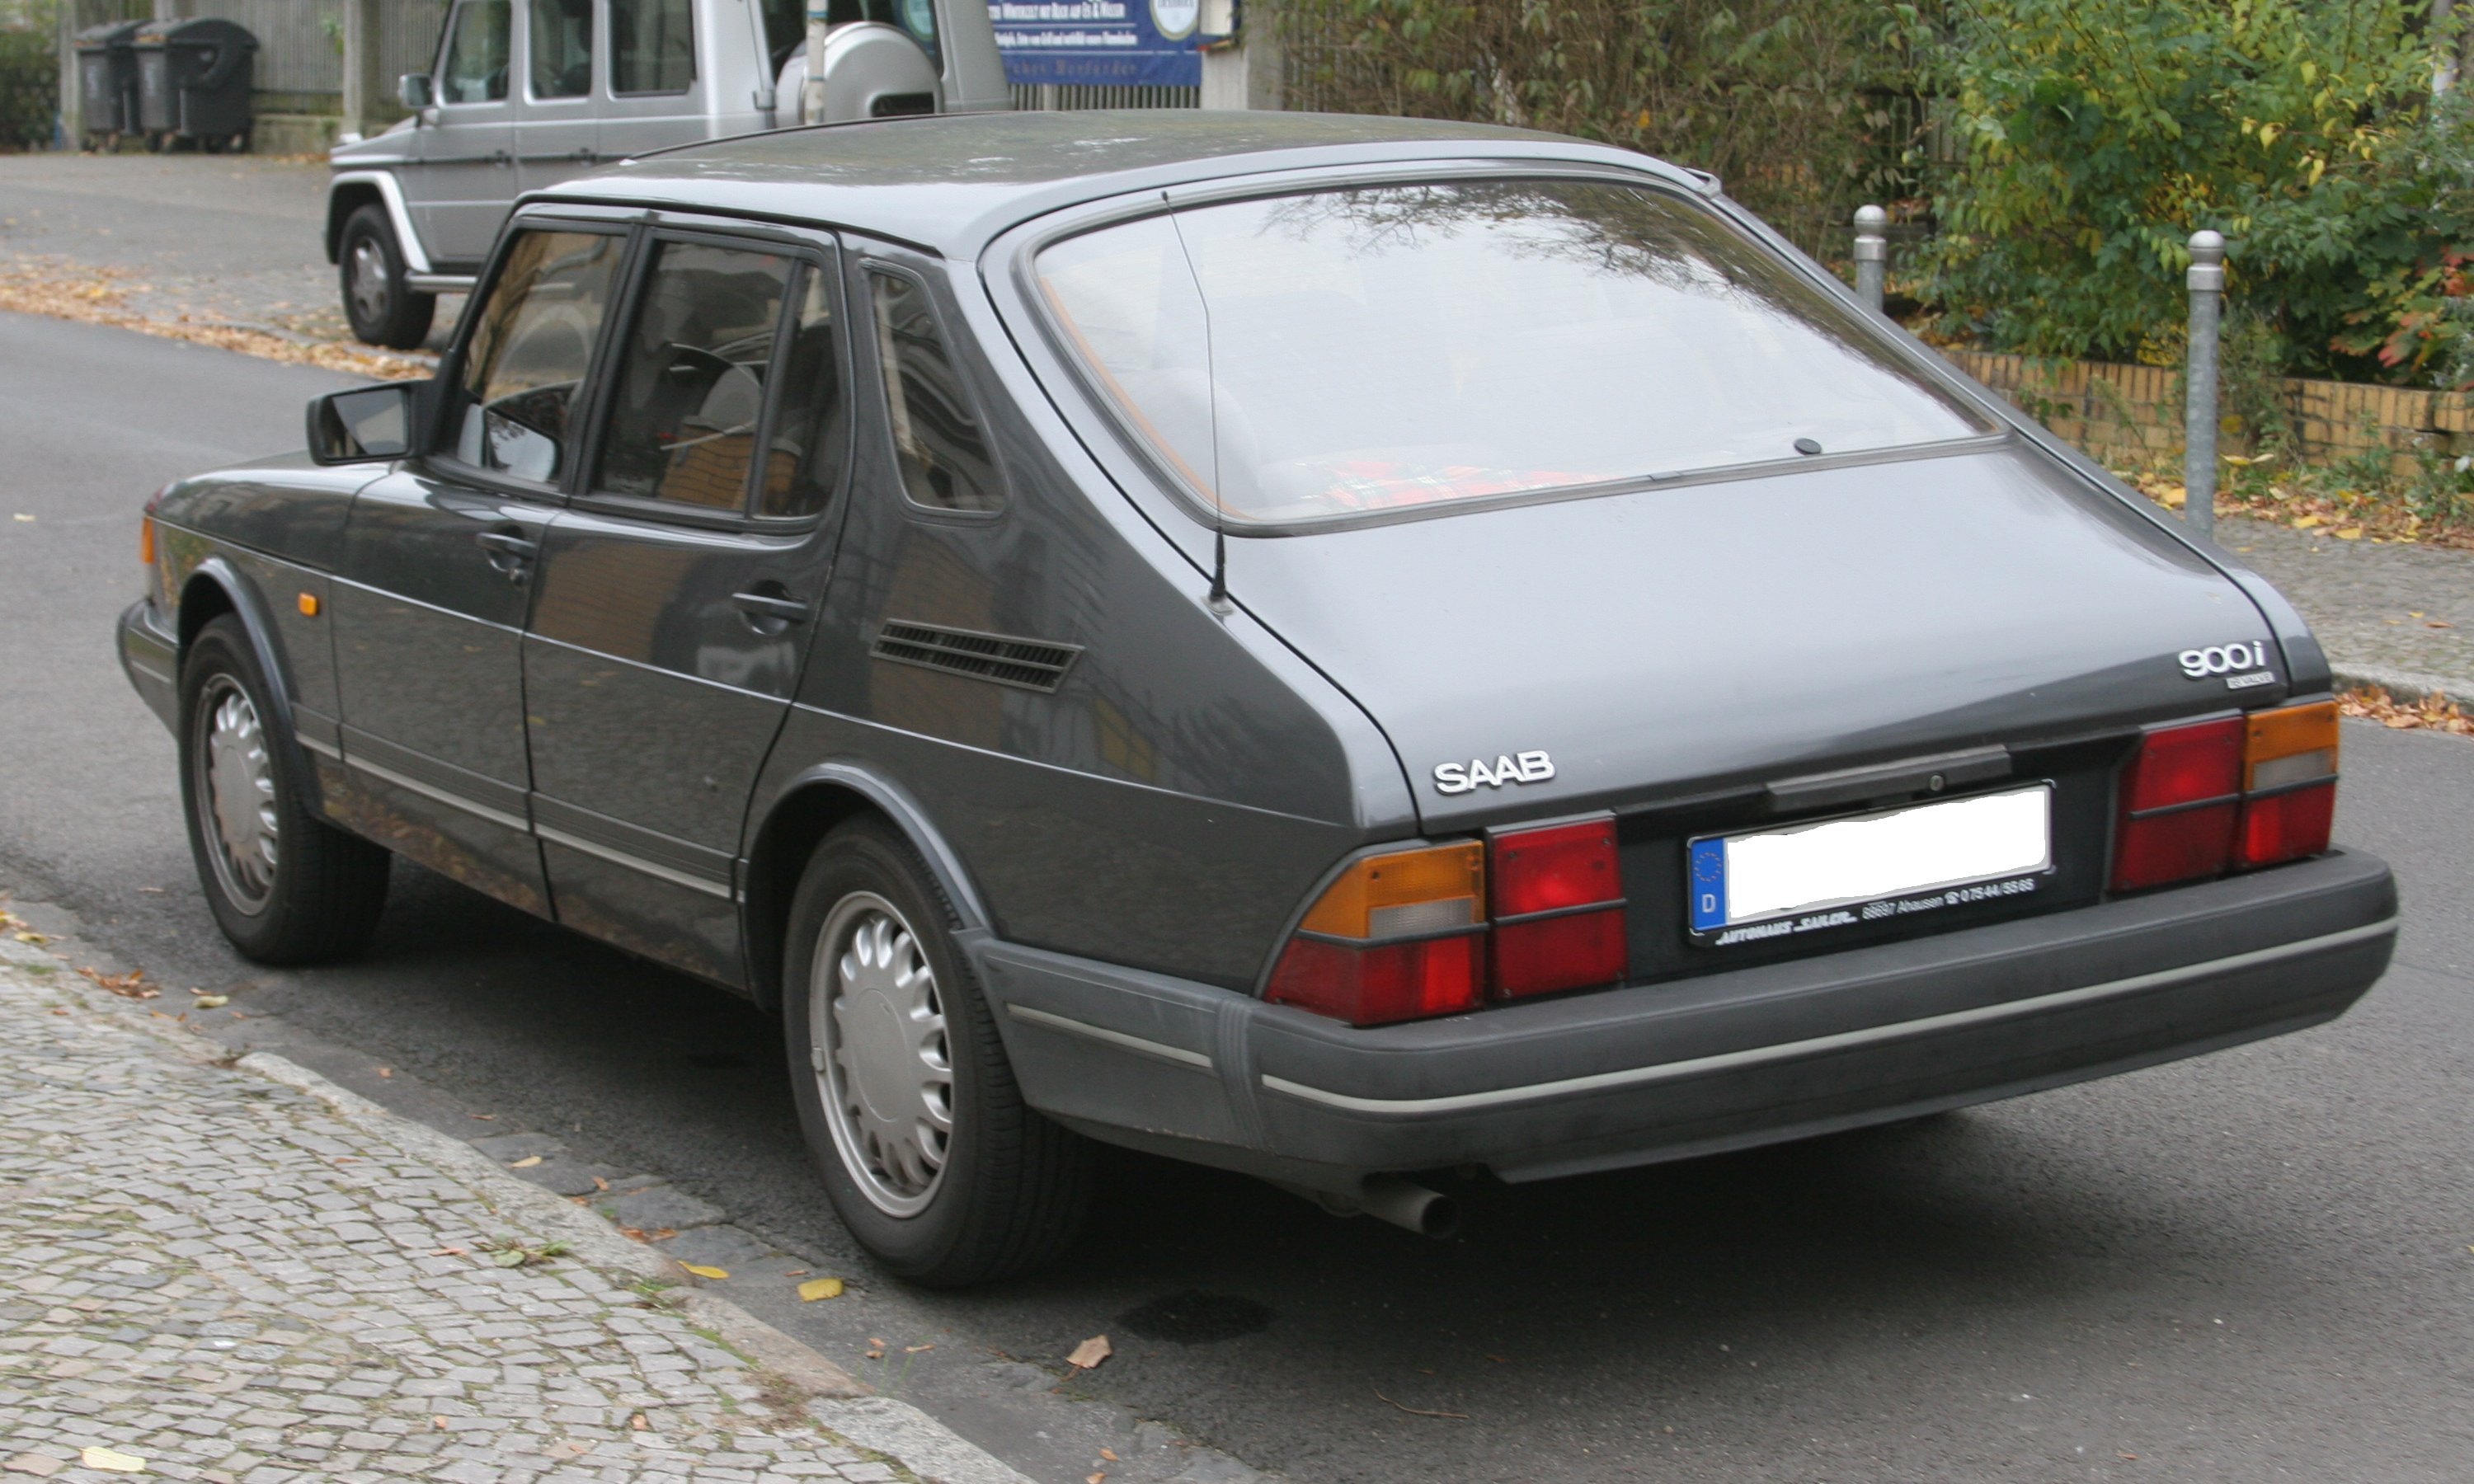 File:Saab 900i 16v.jpg - Wikimedia Commons